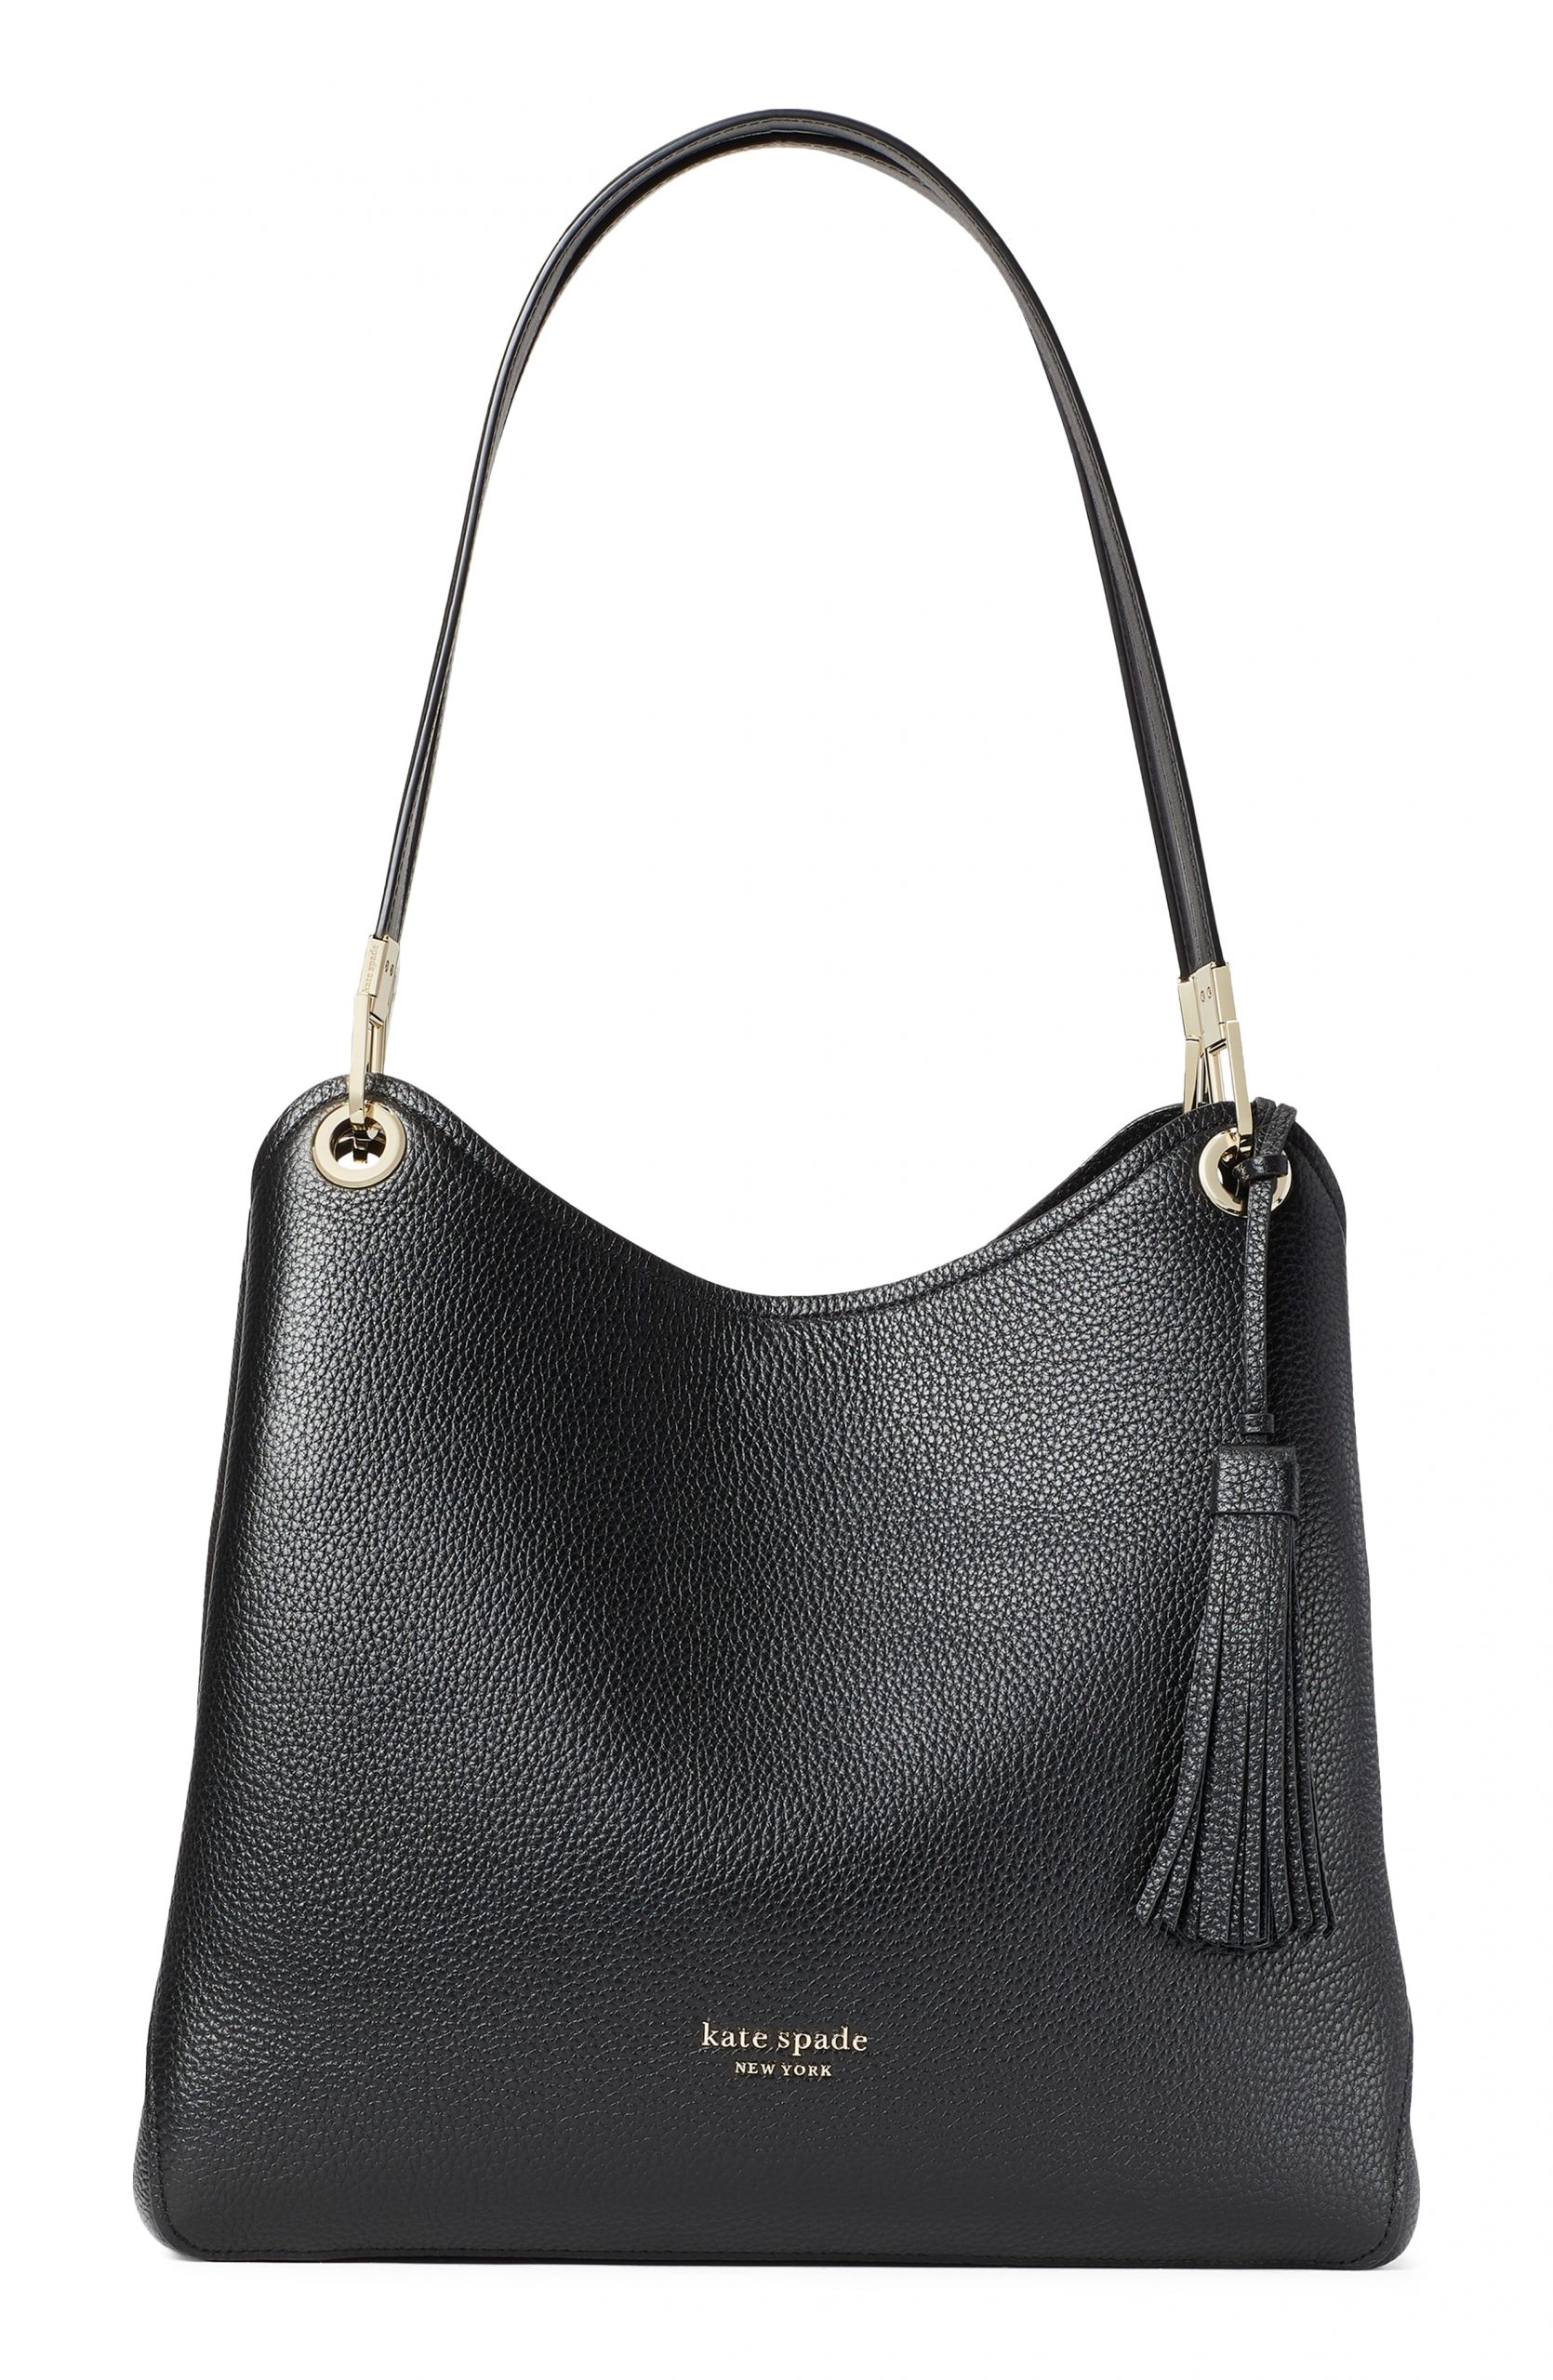 Kate Spade New York Large Loop Leather Shoulder Bag - Black | Fashion ...